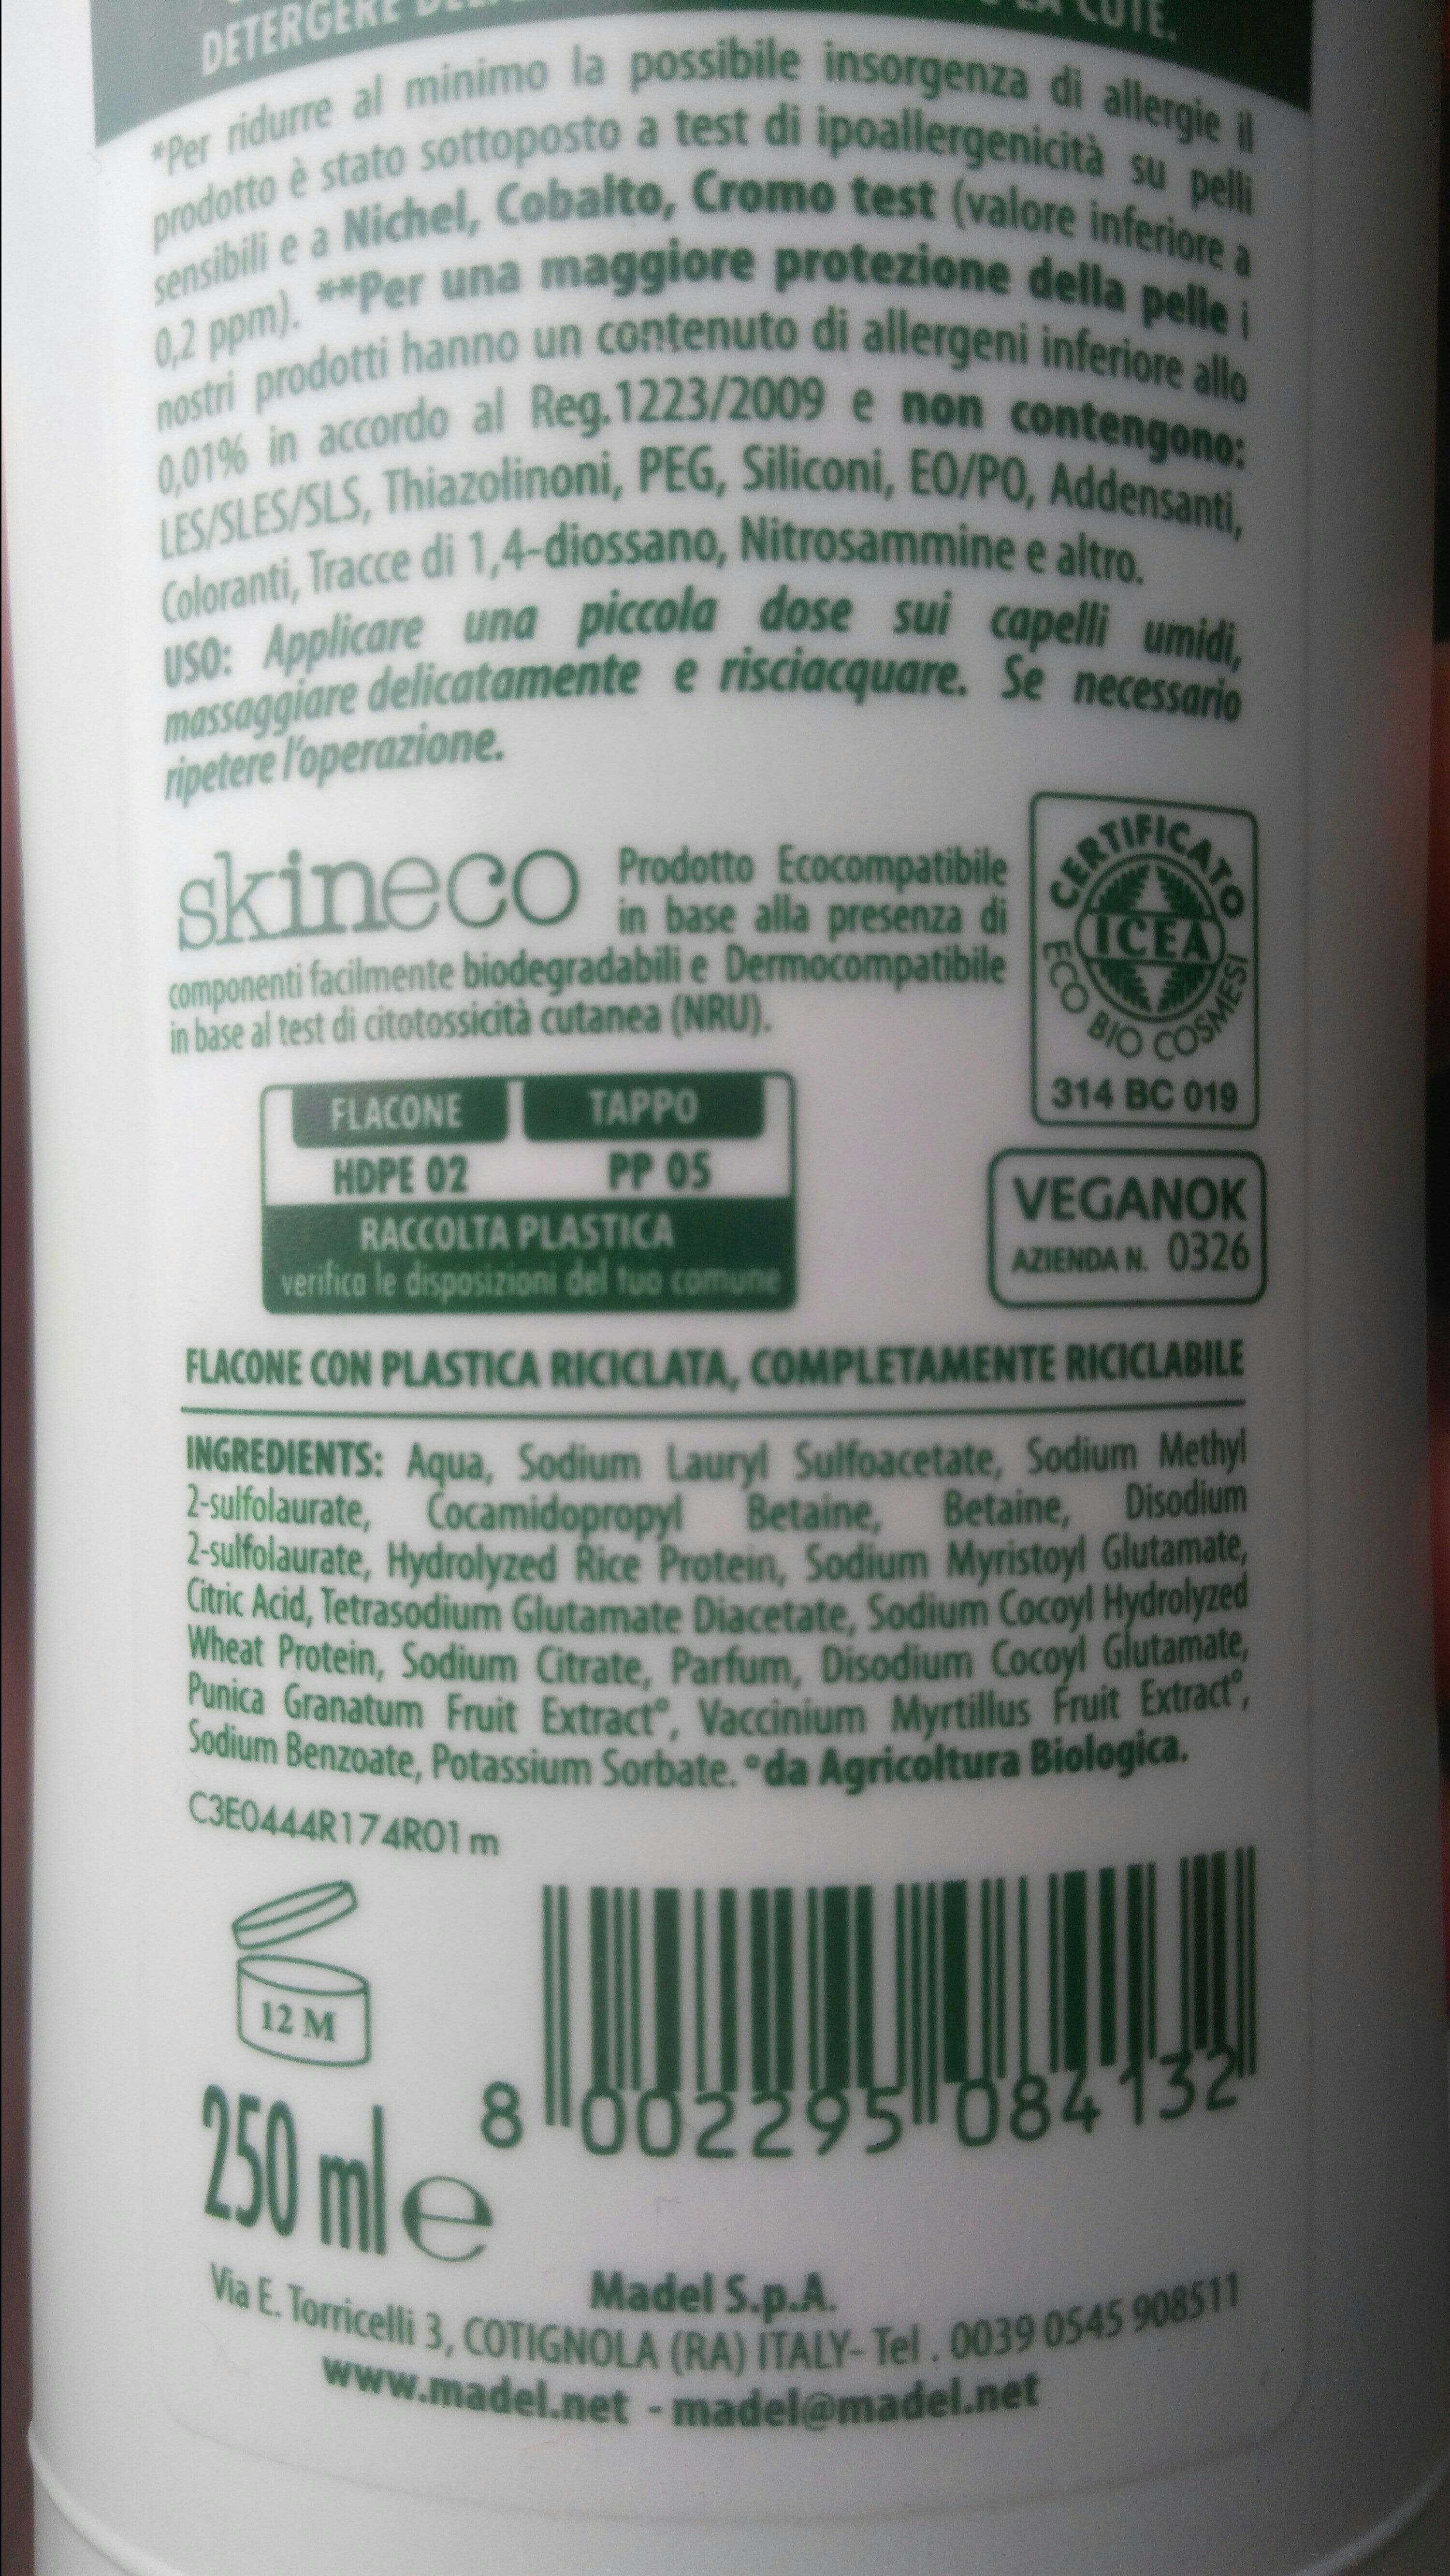 winni's naturel shampoo uso frequente melograno e mirtillo nero - Product - en